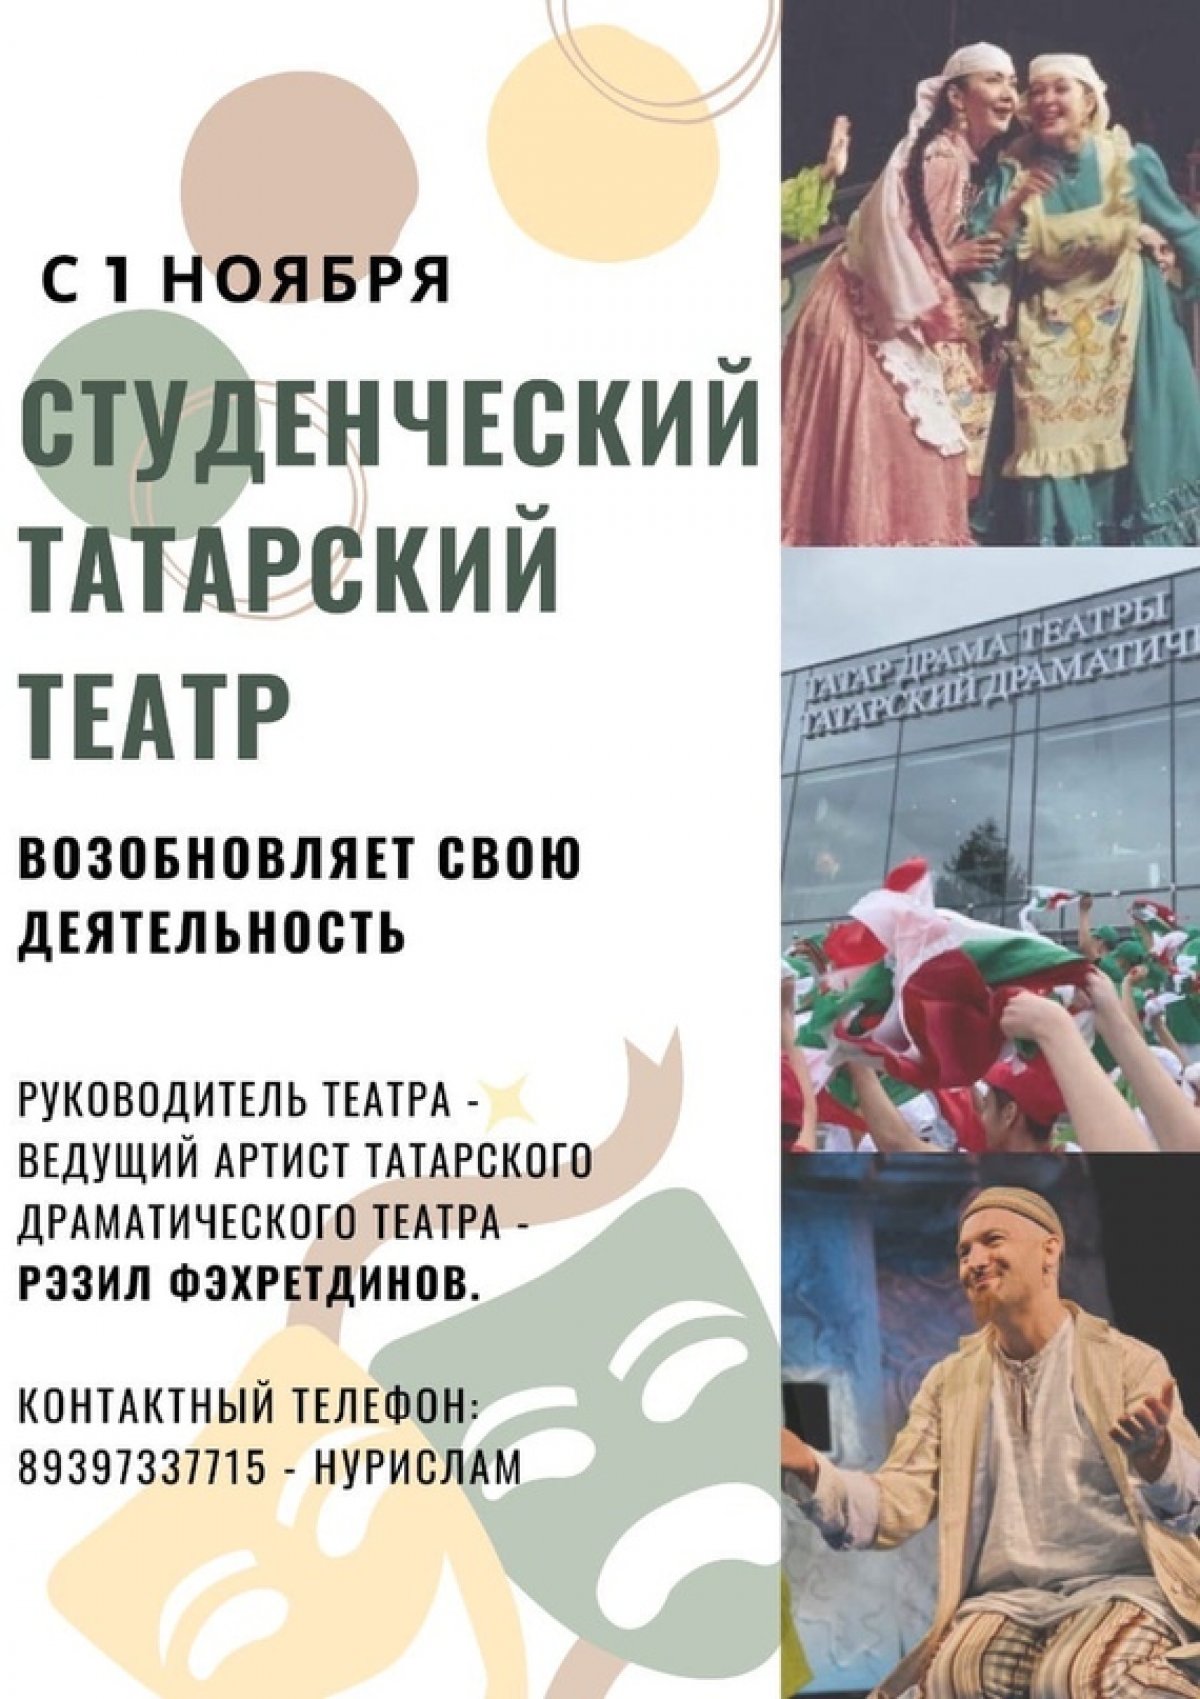 Дорогие студенты, с 1 ноября в нашем возобновляется деятельность татарского театра!🎭